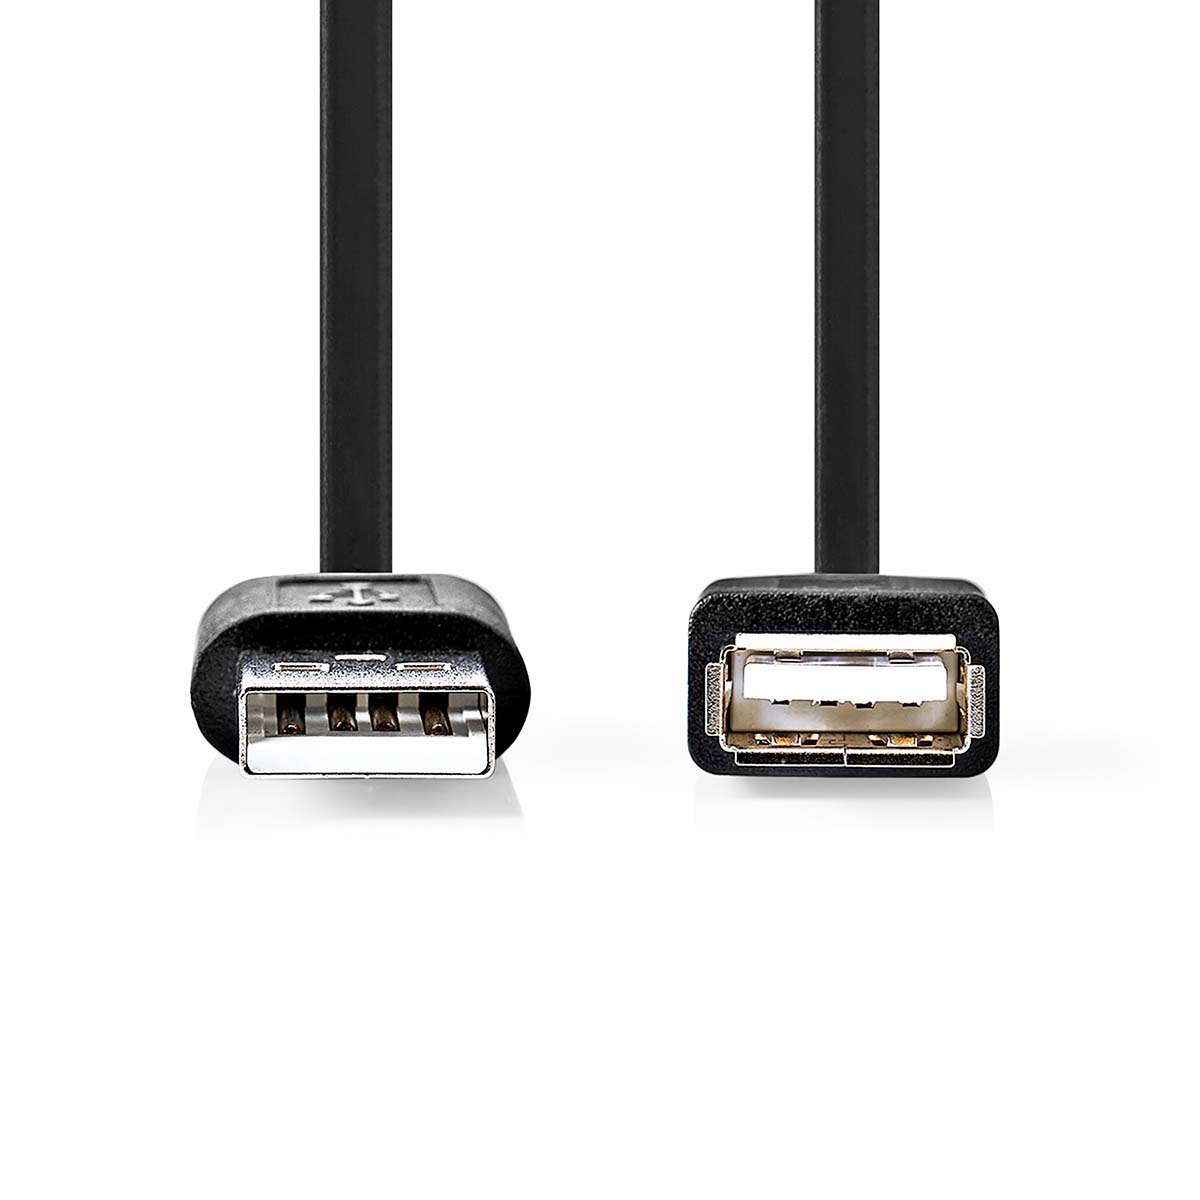 NEDIS USB-Kabel CCGP60010BK10